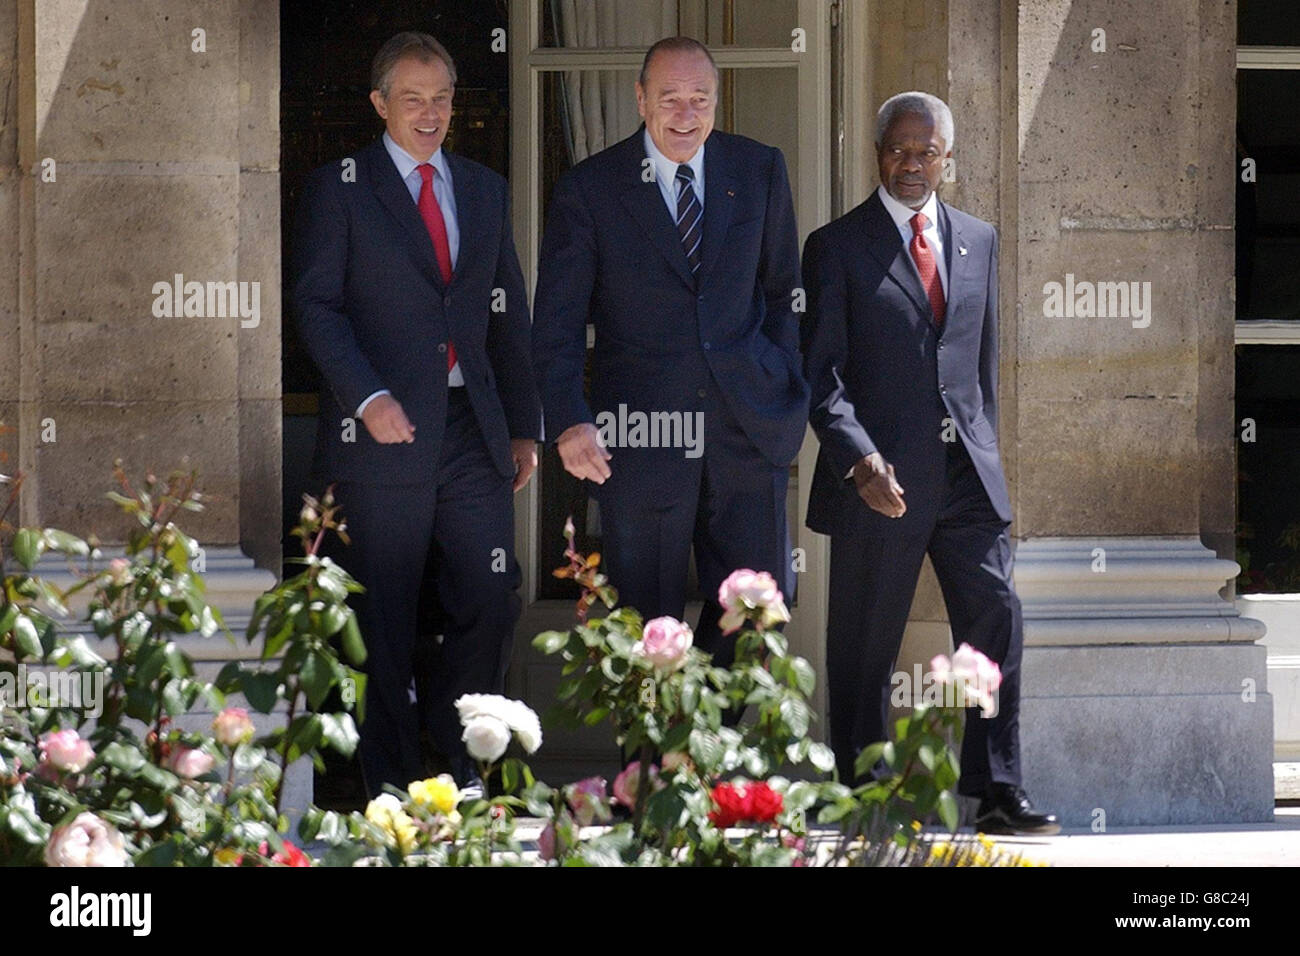 Il primo ministro britannico Tony Blair (a sinistra) parla con il presidente francese Jacques Chirac (al centro) e il segretario generale delle Nazioni Unite Kofi Annan durante un seminario delle Nazioni Unite per evidenziare il cosiddetto 'Global compact' tra il mondo degli affari e la politica. Foto Stock